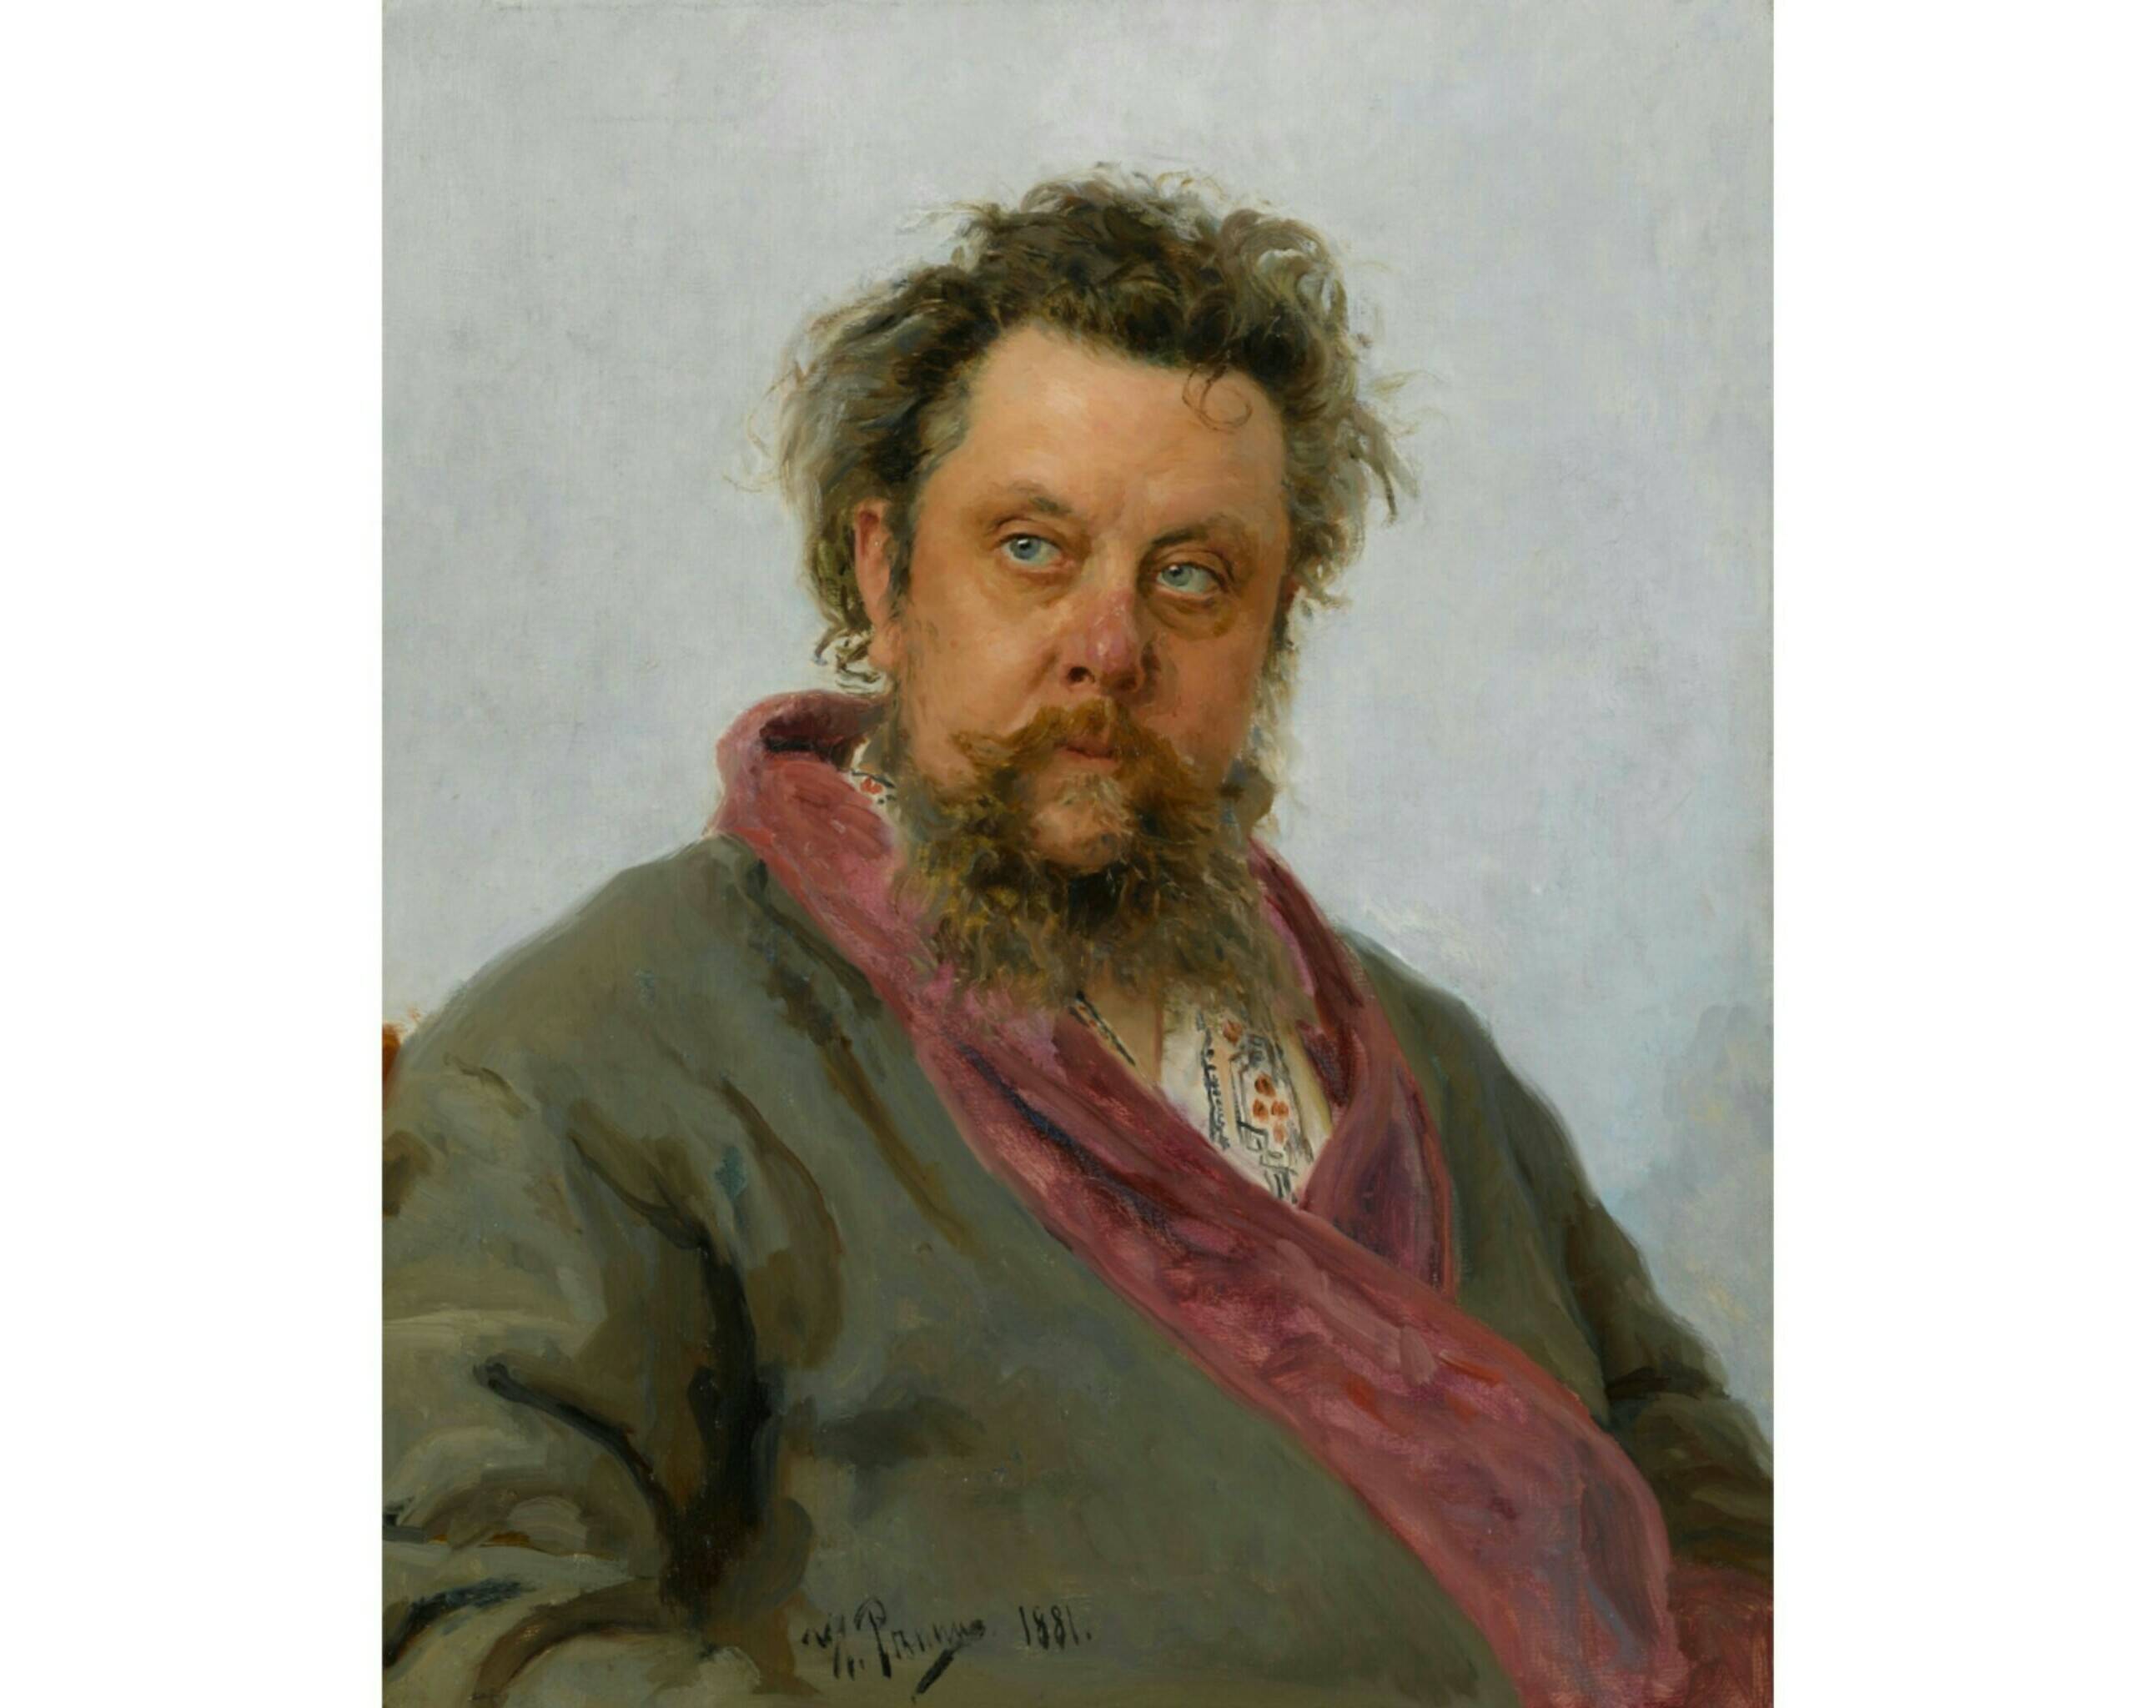 И.Е. Репин «Портрет композитора М.П. Мусоргского», 1881 год. Из собрания Третьяковской галереи